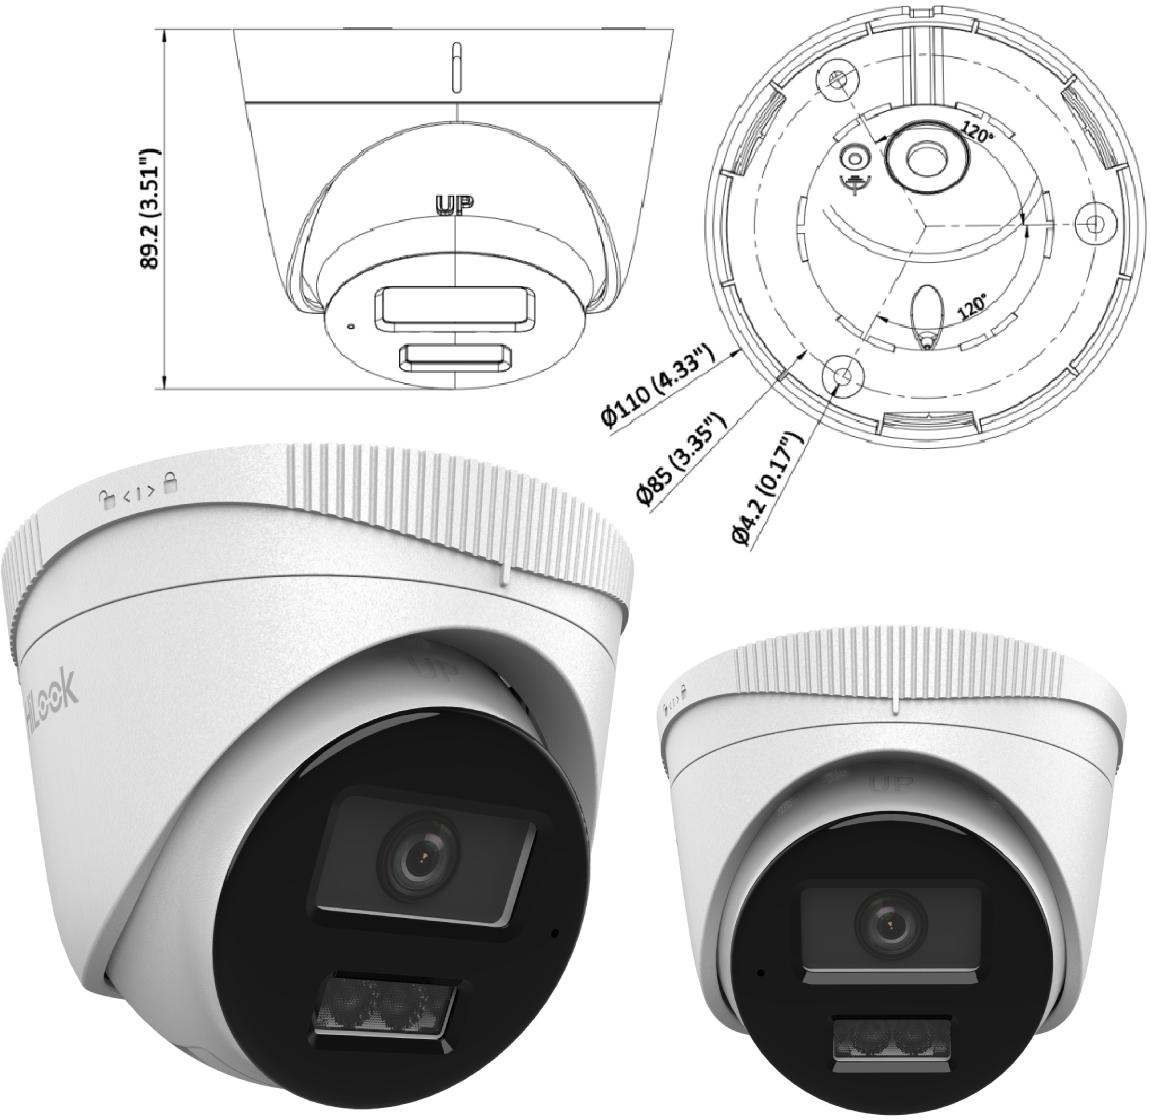 Kamera IP Hilook turret 2MP IPCAM-T2-30DL 2.8mm - wymiary: